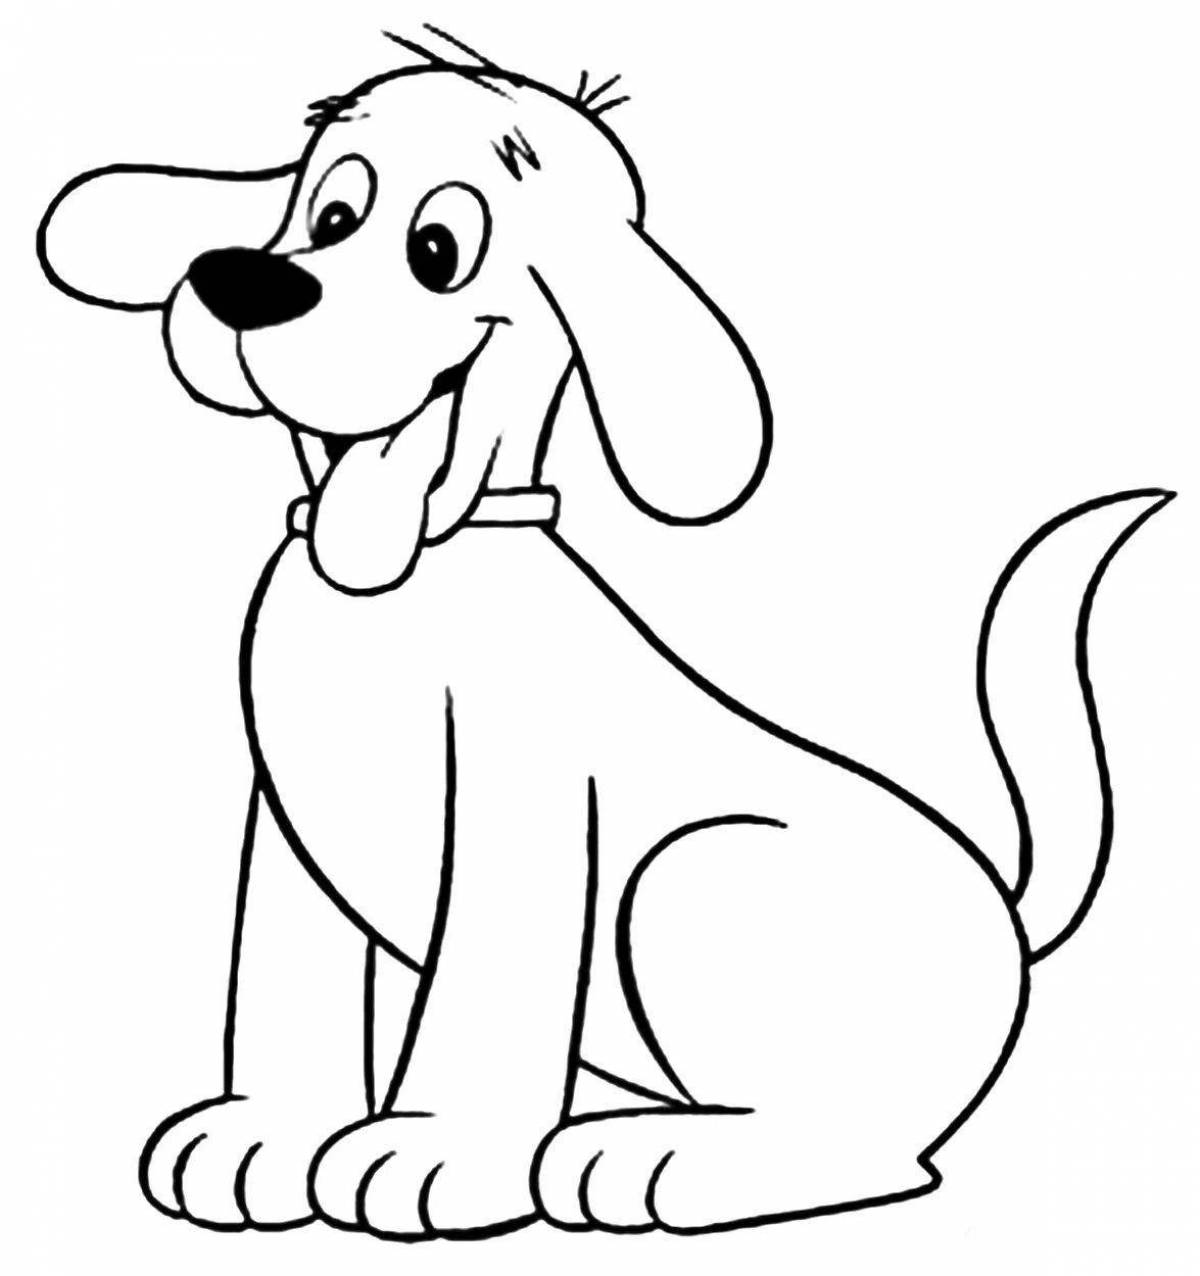 Joyful cartoon dog coloring book